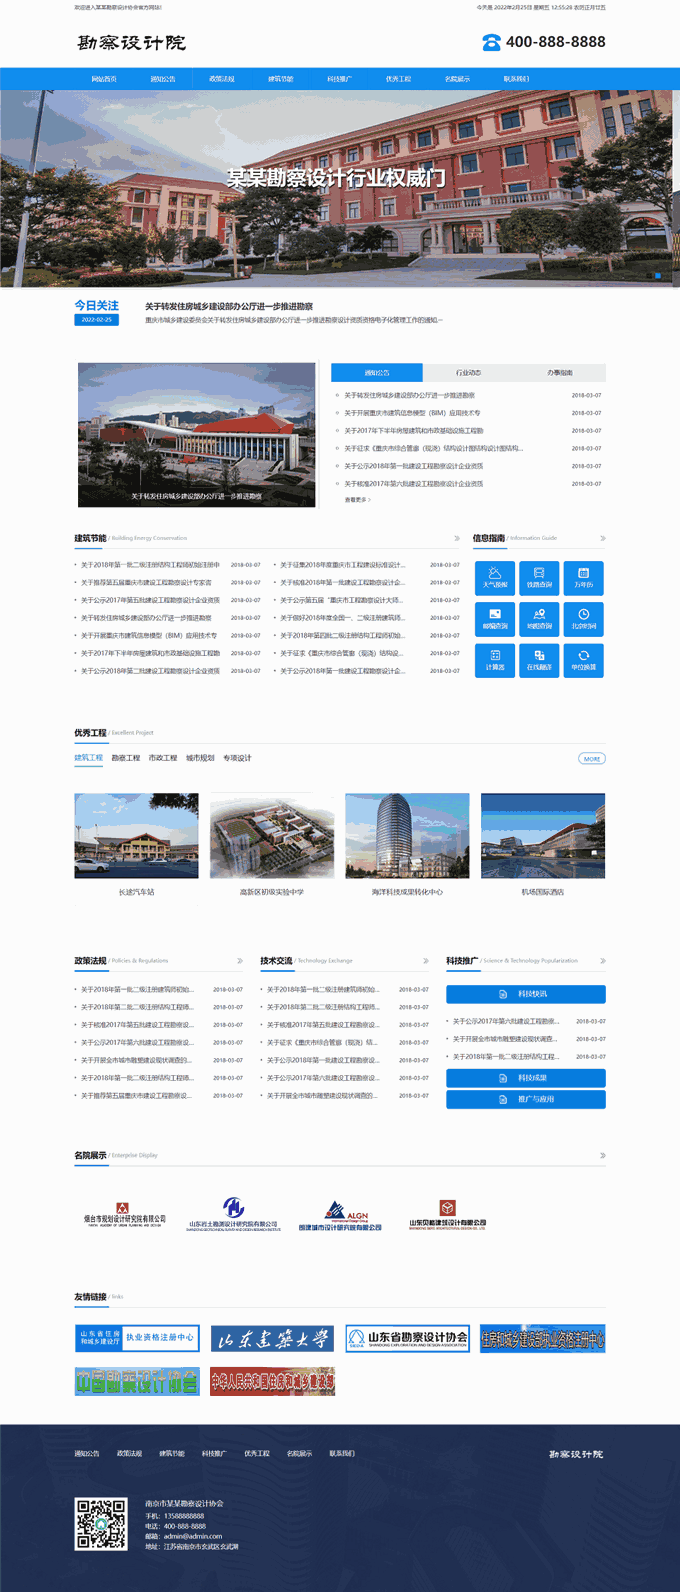 政府单位商会协会设计院官方网站模板下载首页图